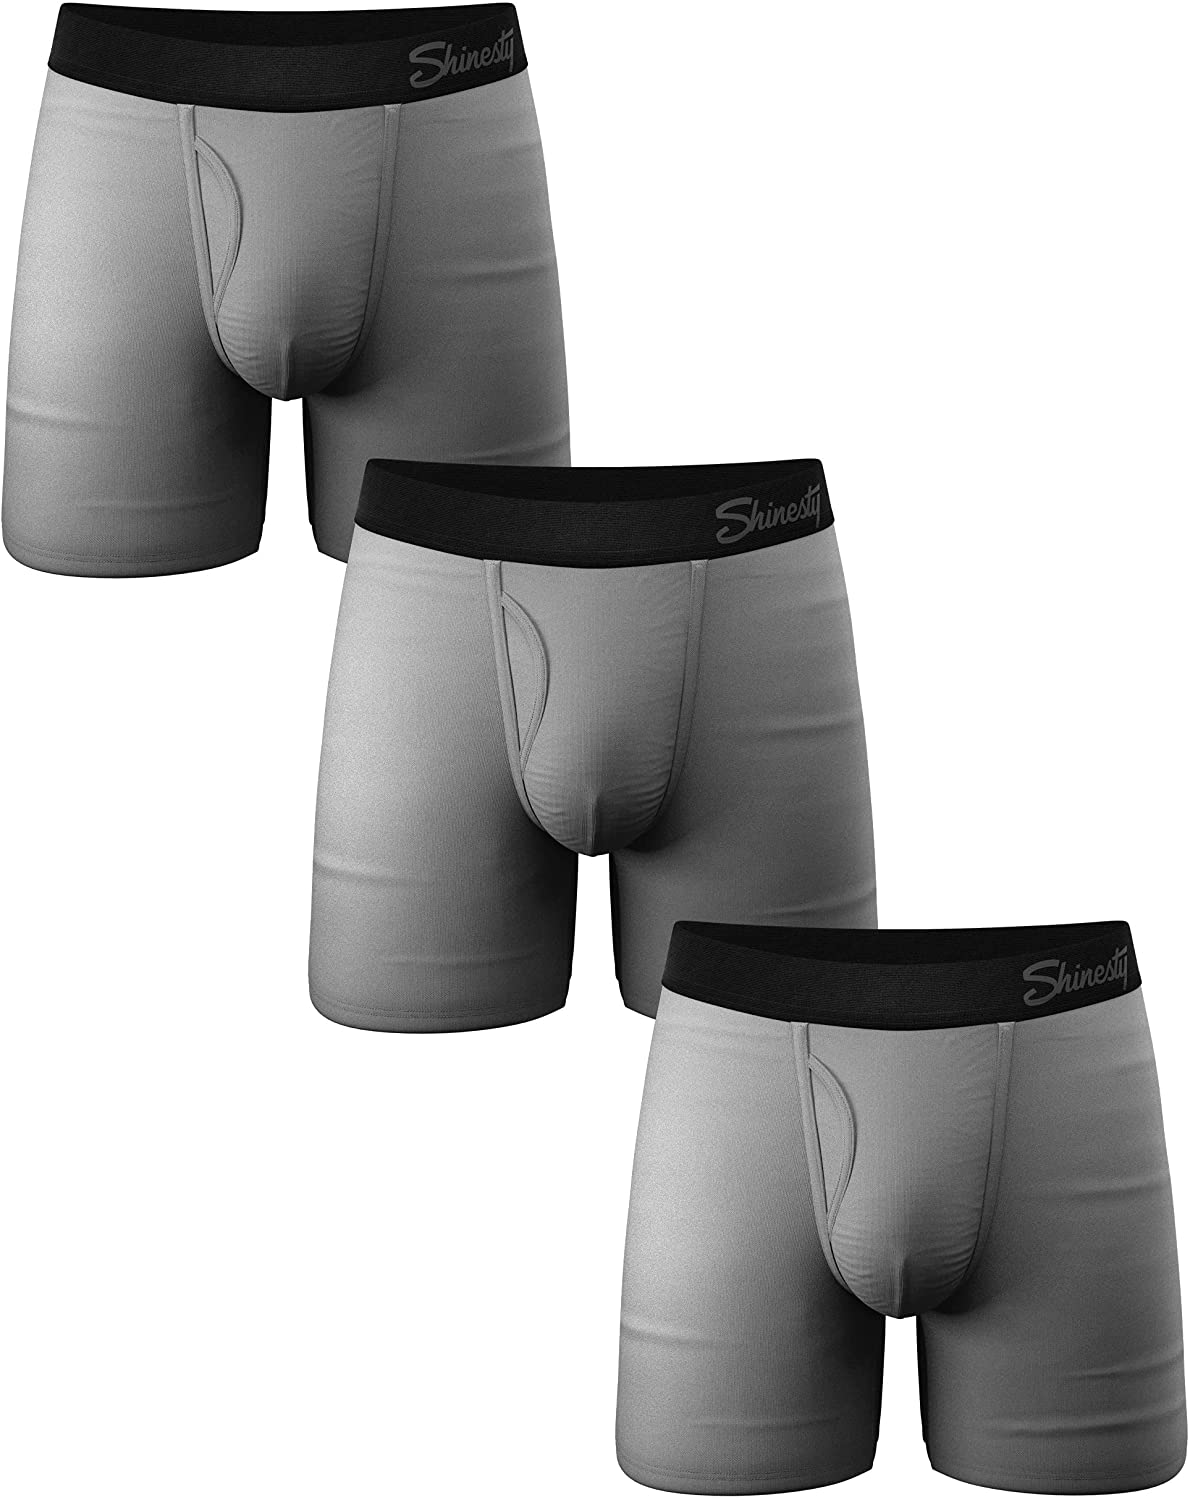 Shinesty Ball Hammock Pouch Underwear, men’s size medium, new.